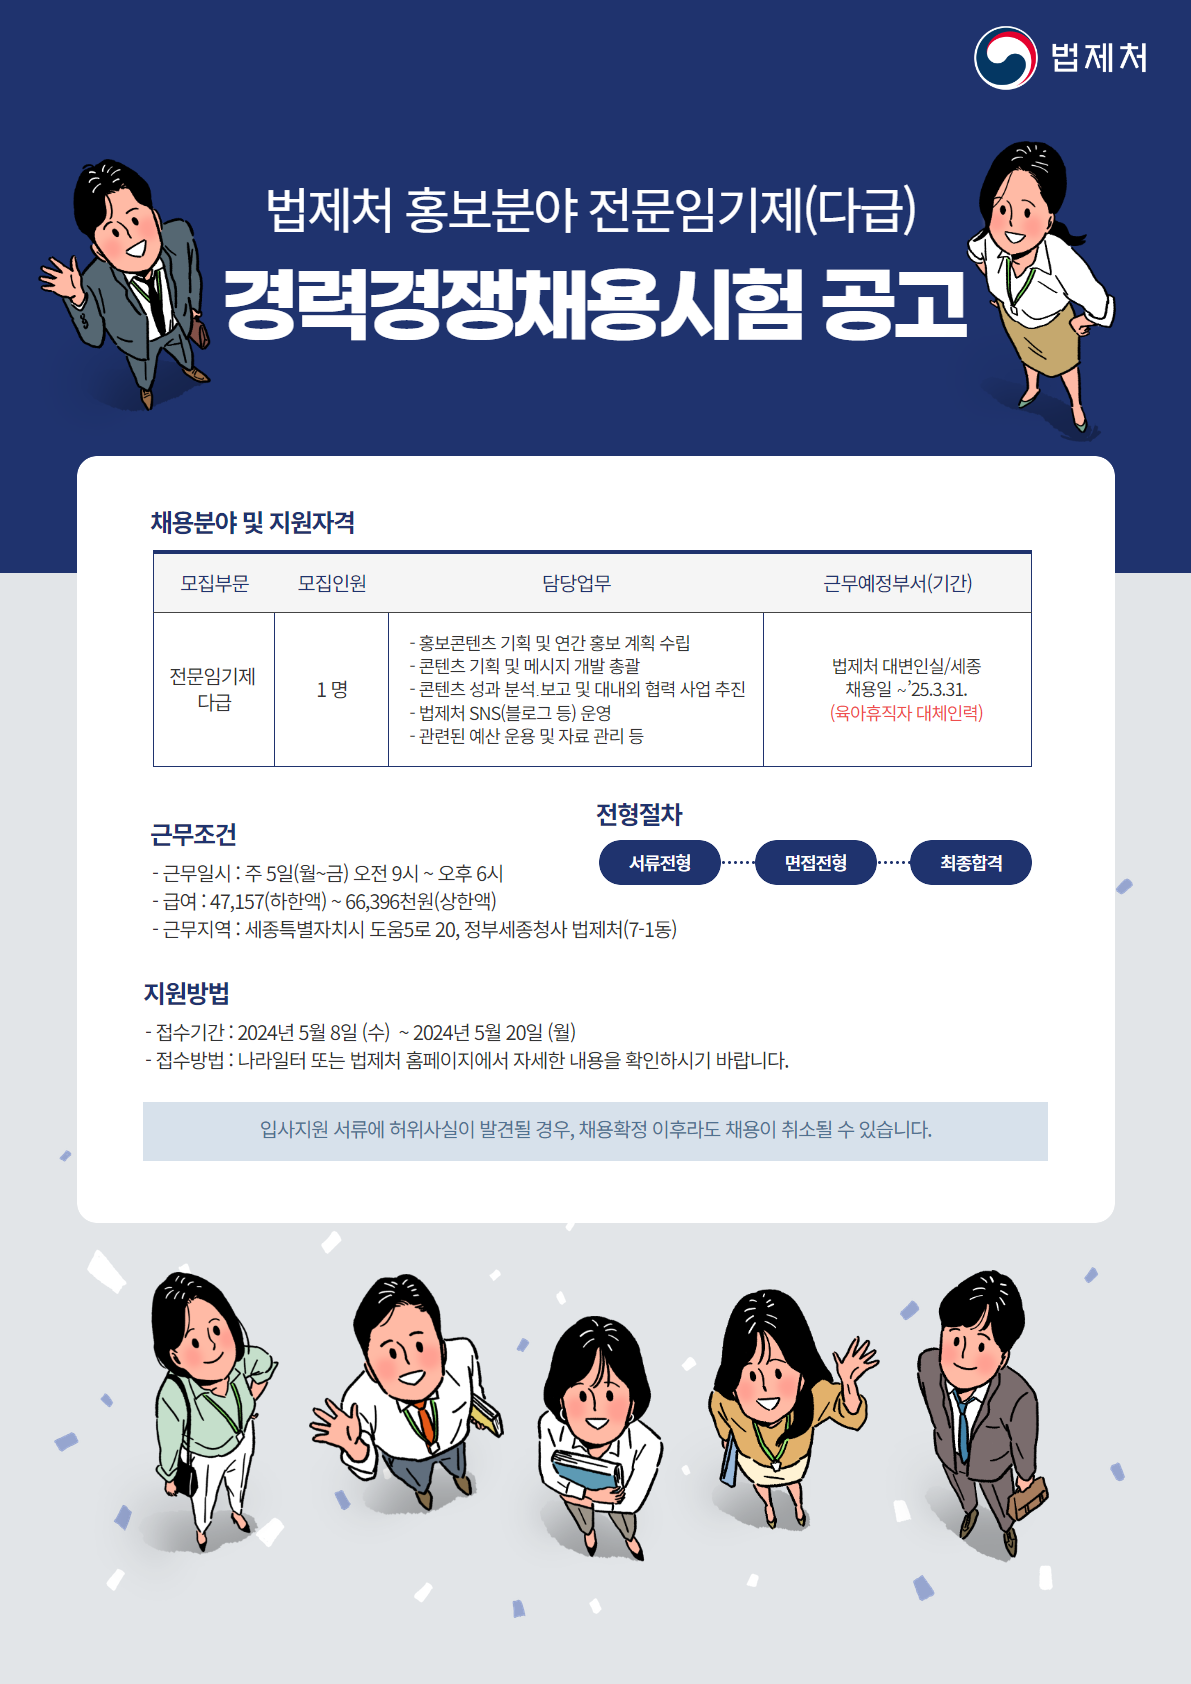  법제처 홍보분야 전문임기제 다급 채용공고 포스터.png